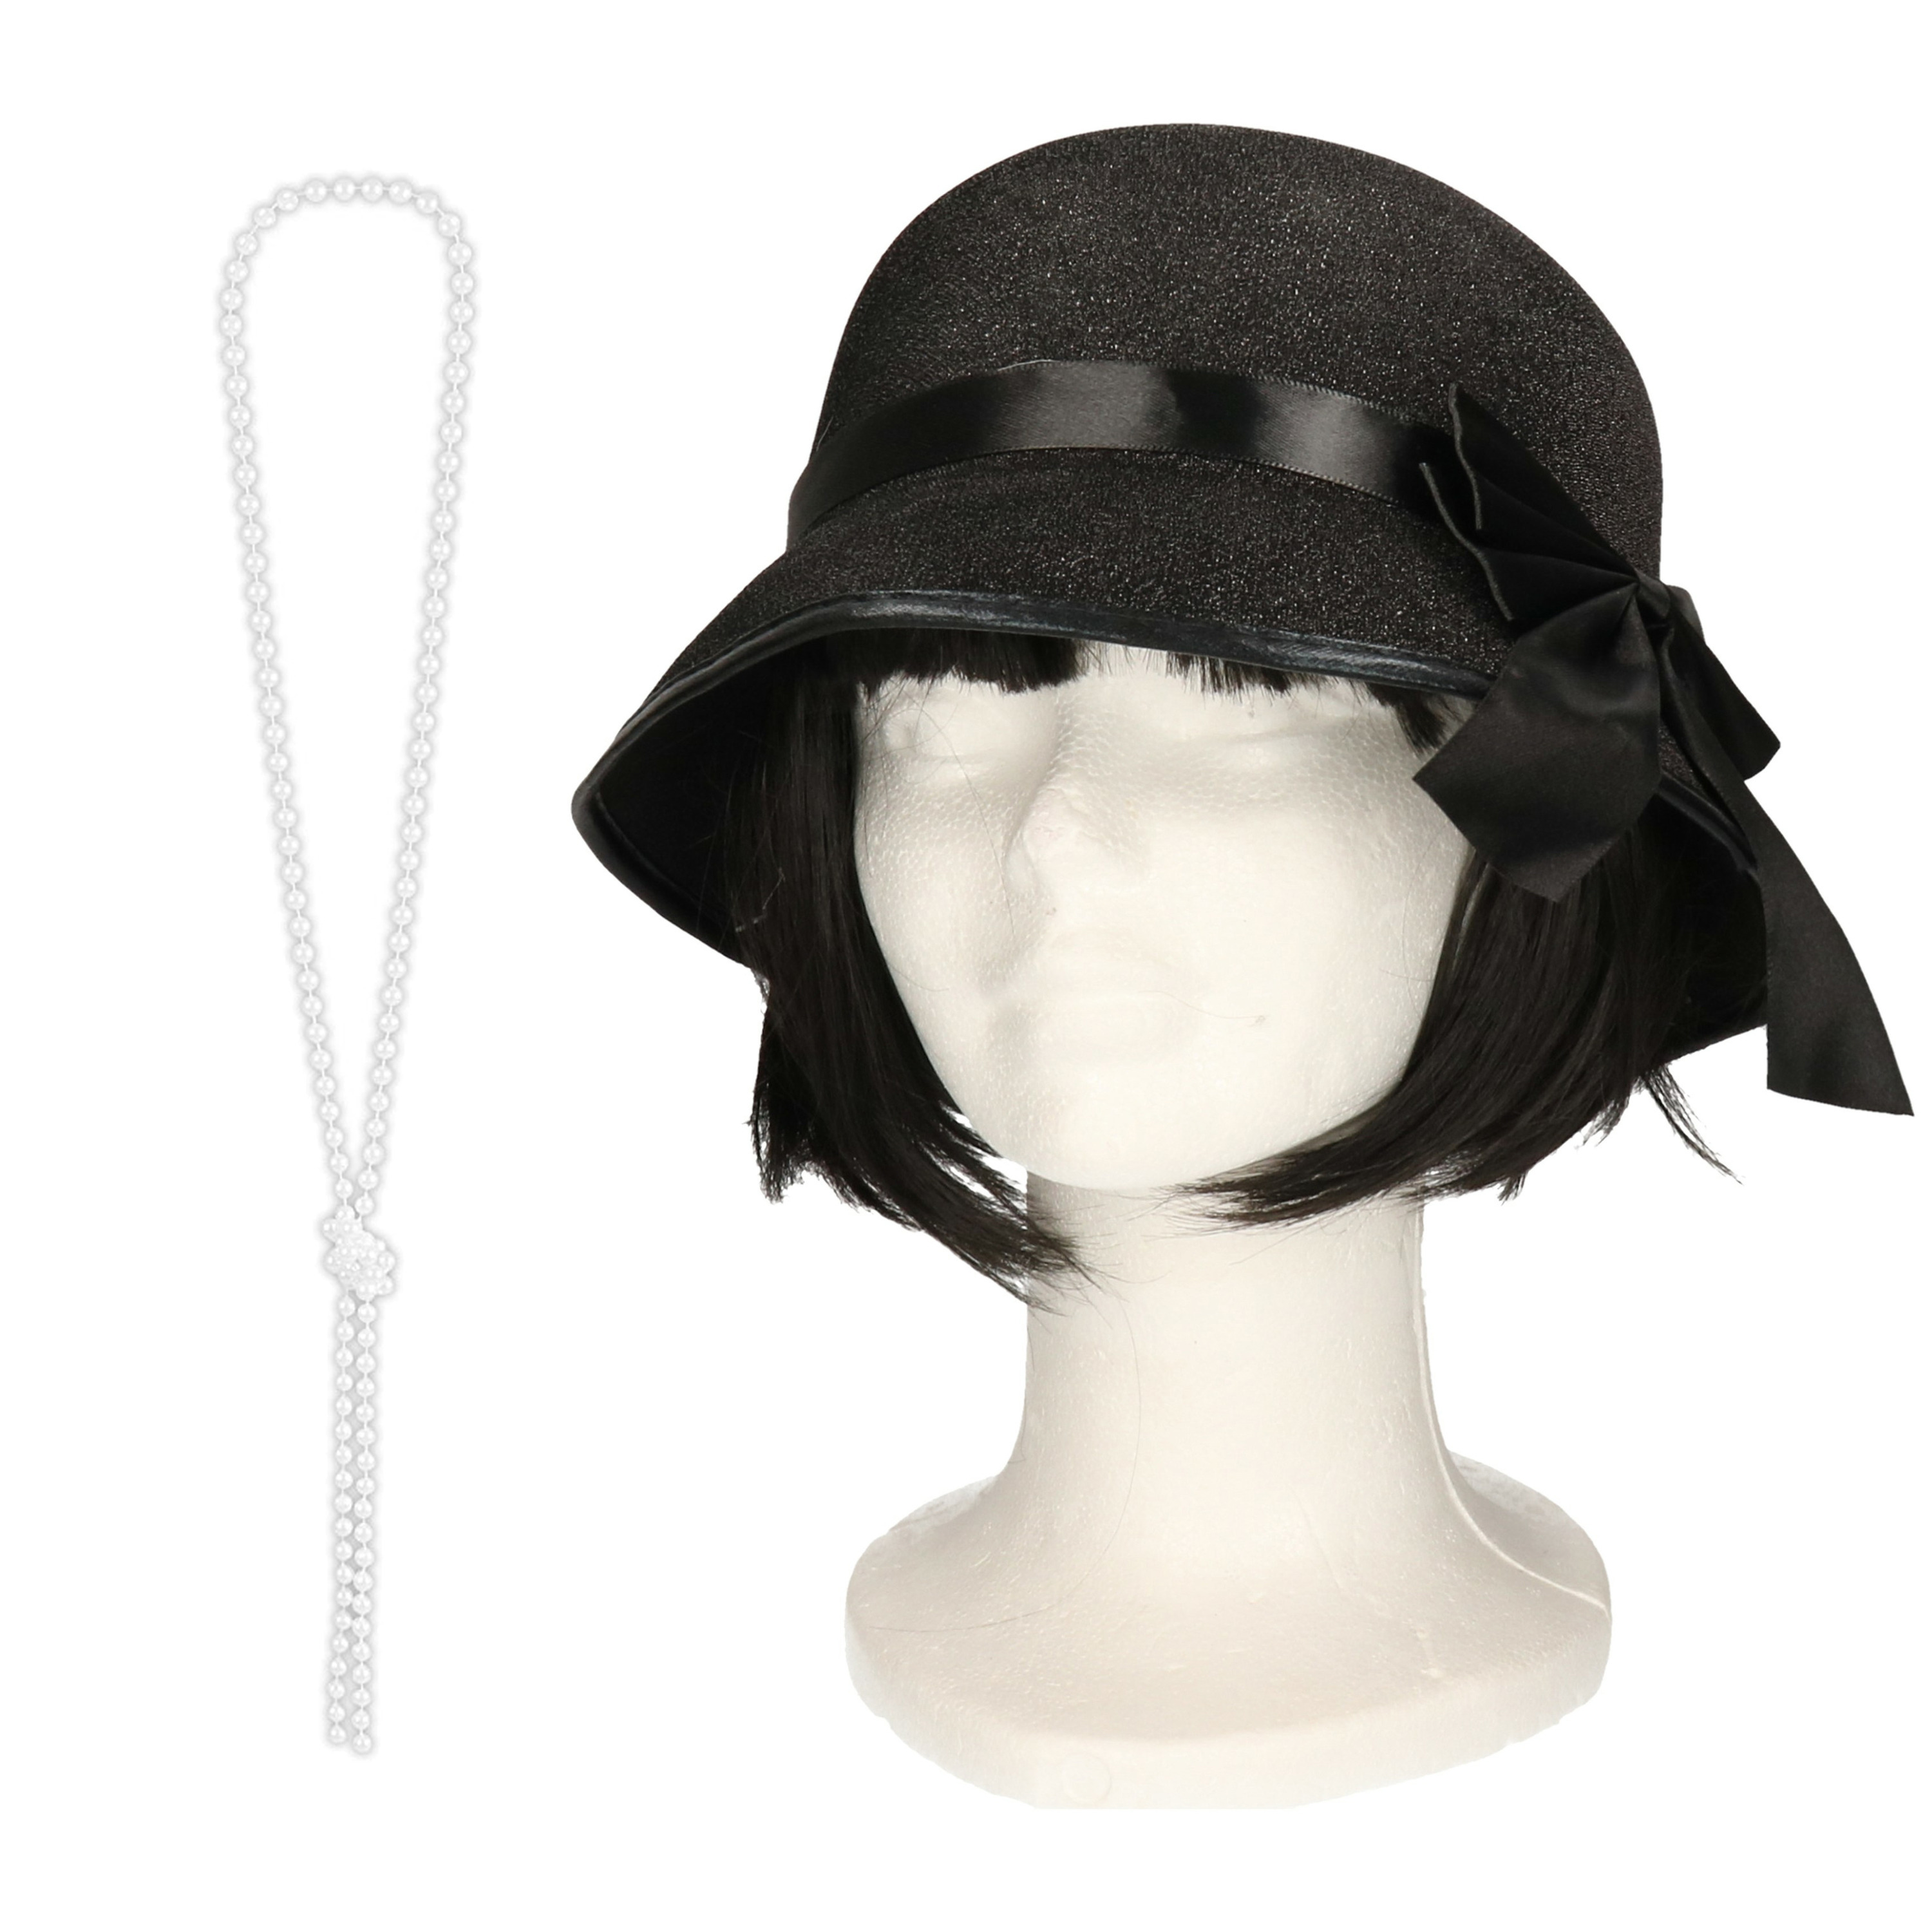 Carnaval verkleed accessoire set dames hoedje en parelketting charleston-jaren 20 stijl